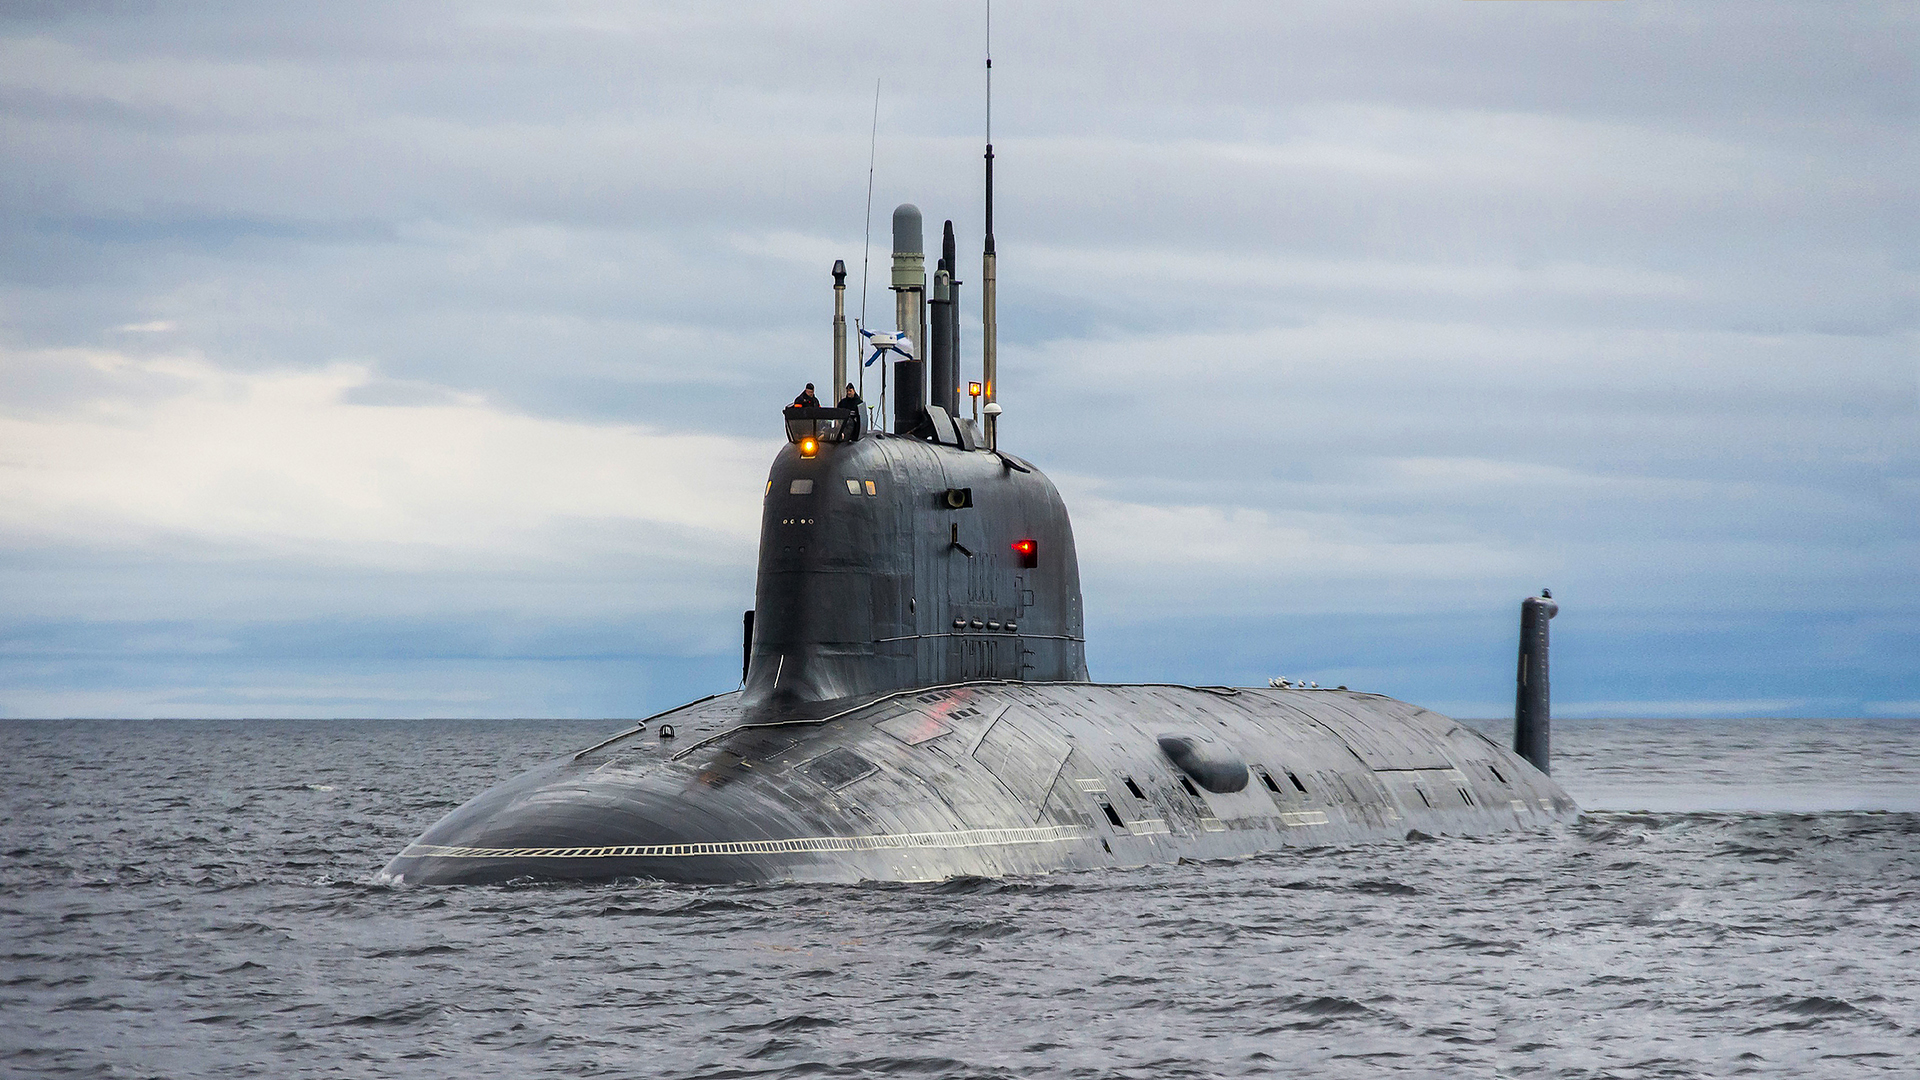 Подводные лодки проекта 885 ясень- история создания и службы российских апл